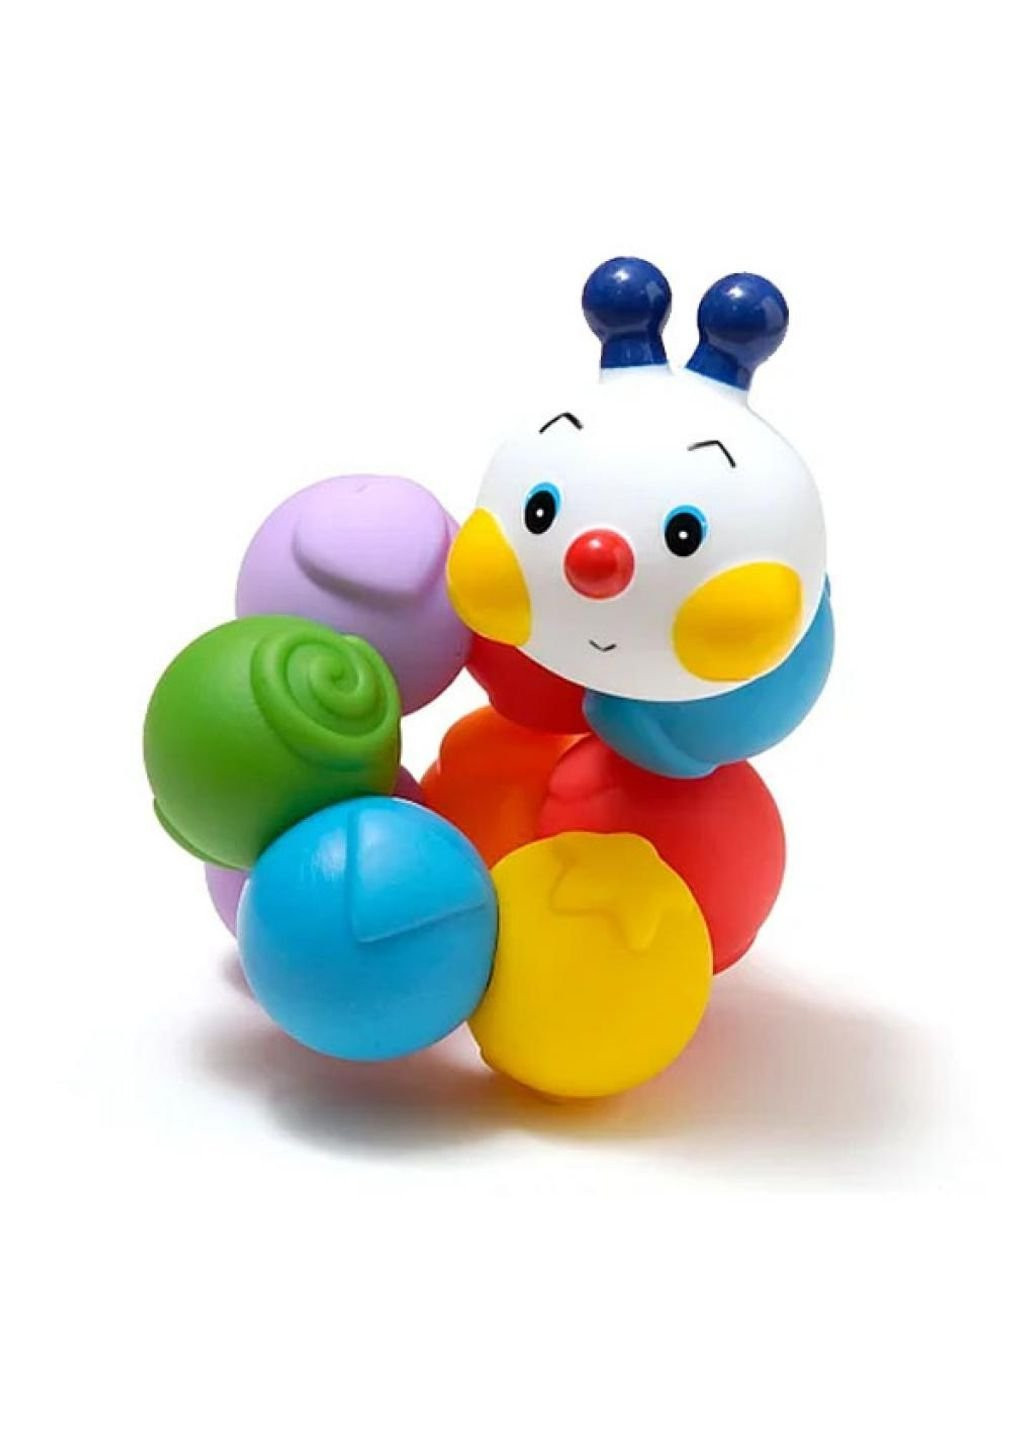 Розвиваюча іграшка K'S KIDS Гусеничка, що складається (KA10610-3GB) K’S Kids (254064885)